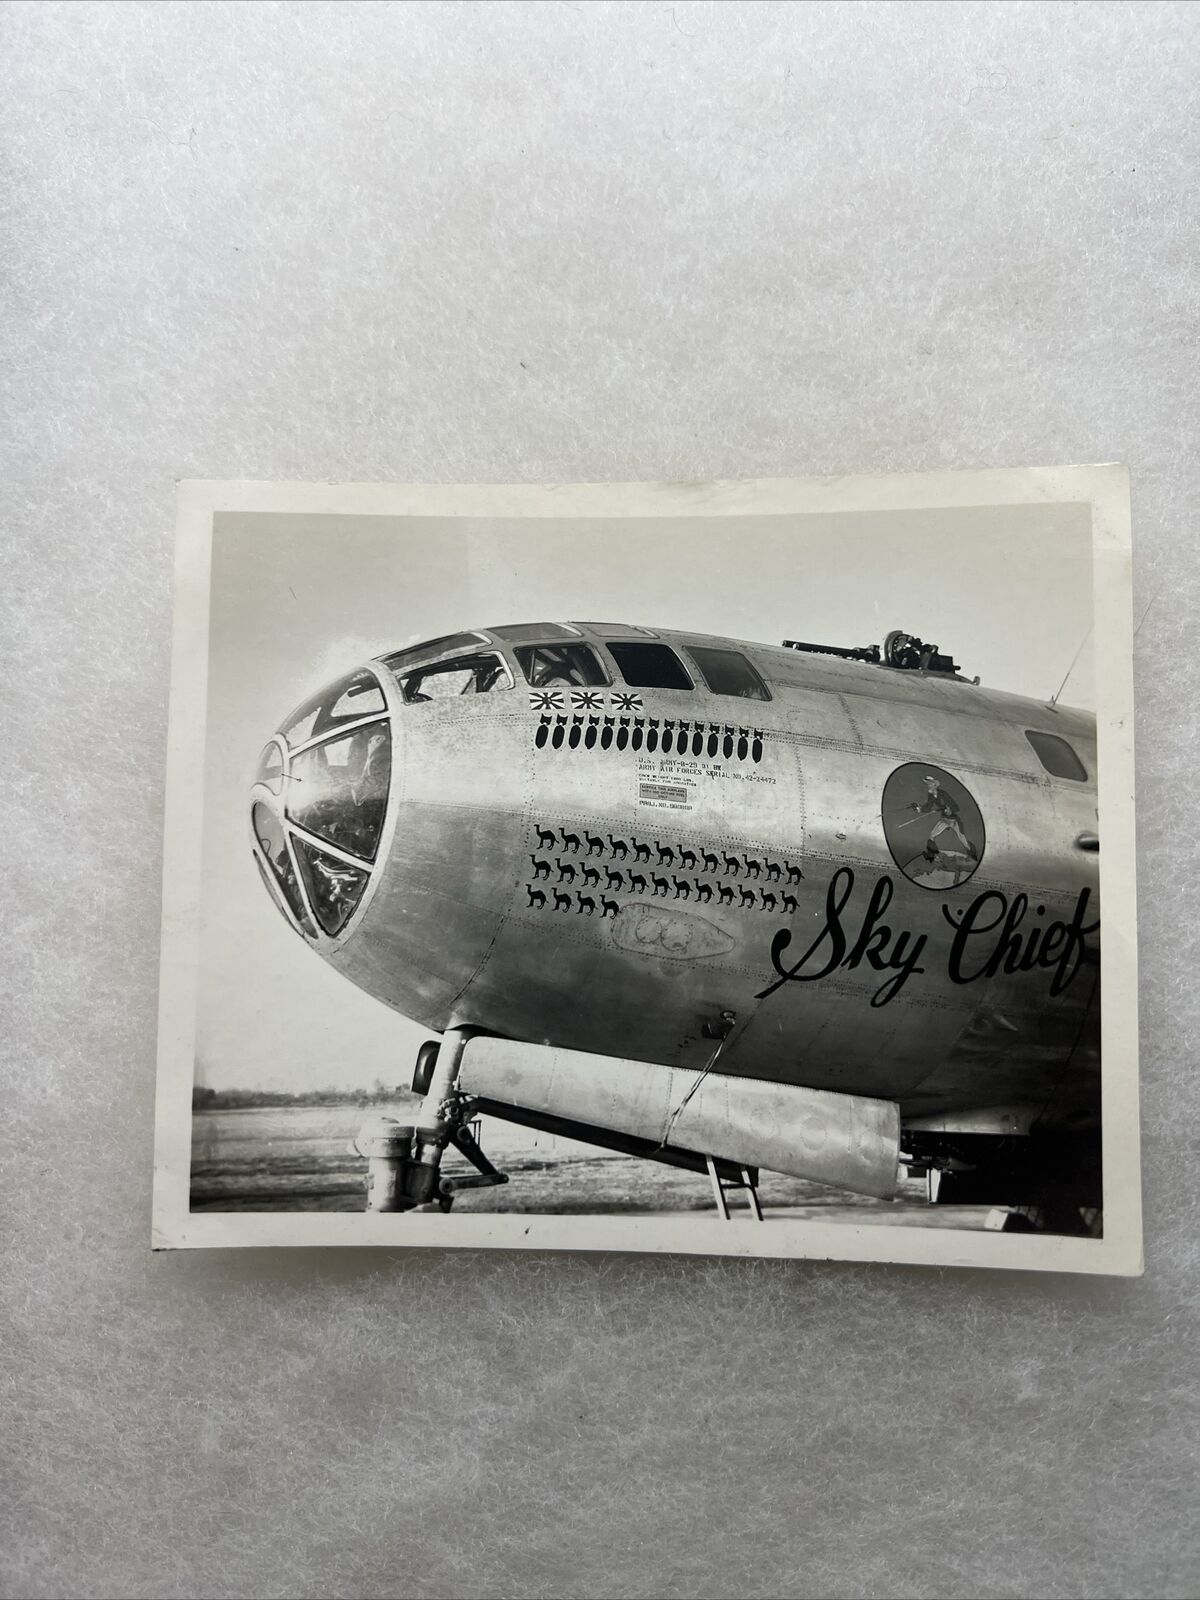 WW2 US Army Air Corps Nose Art “Sky Chief” Plane Photo (V101